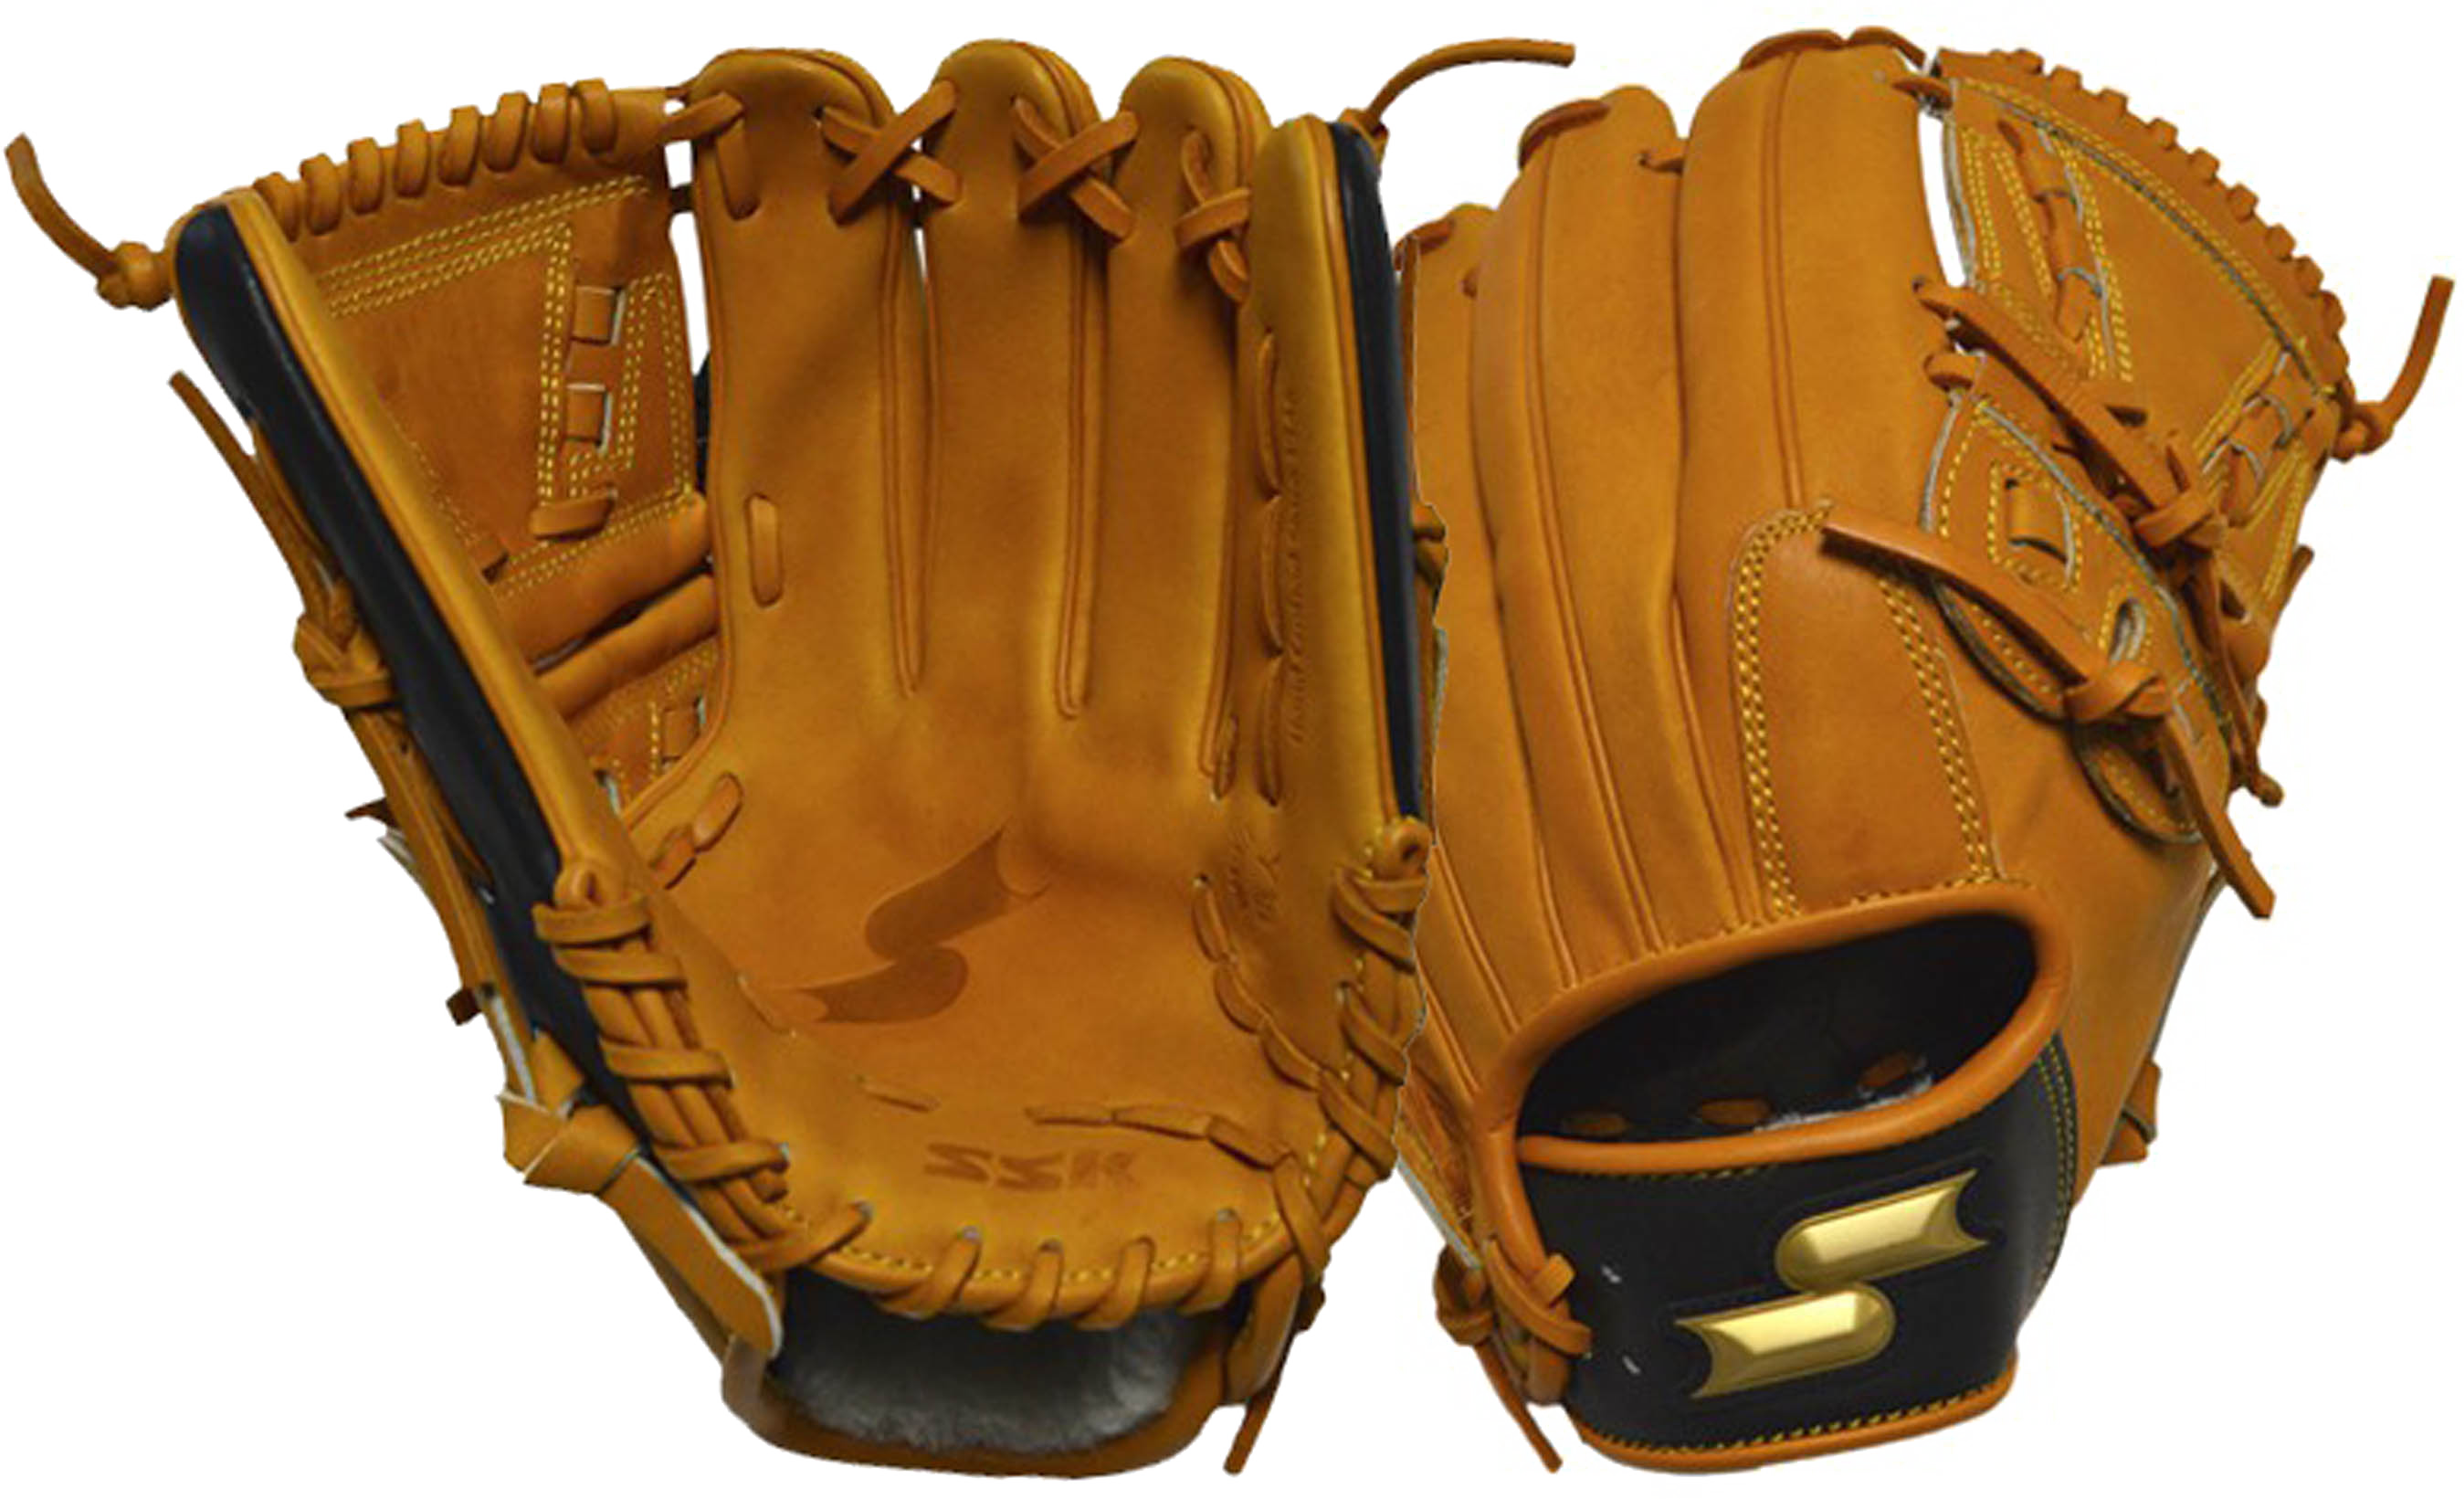 Baseball Gloves PNG Transparent Image